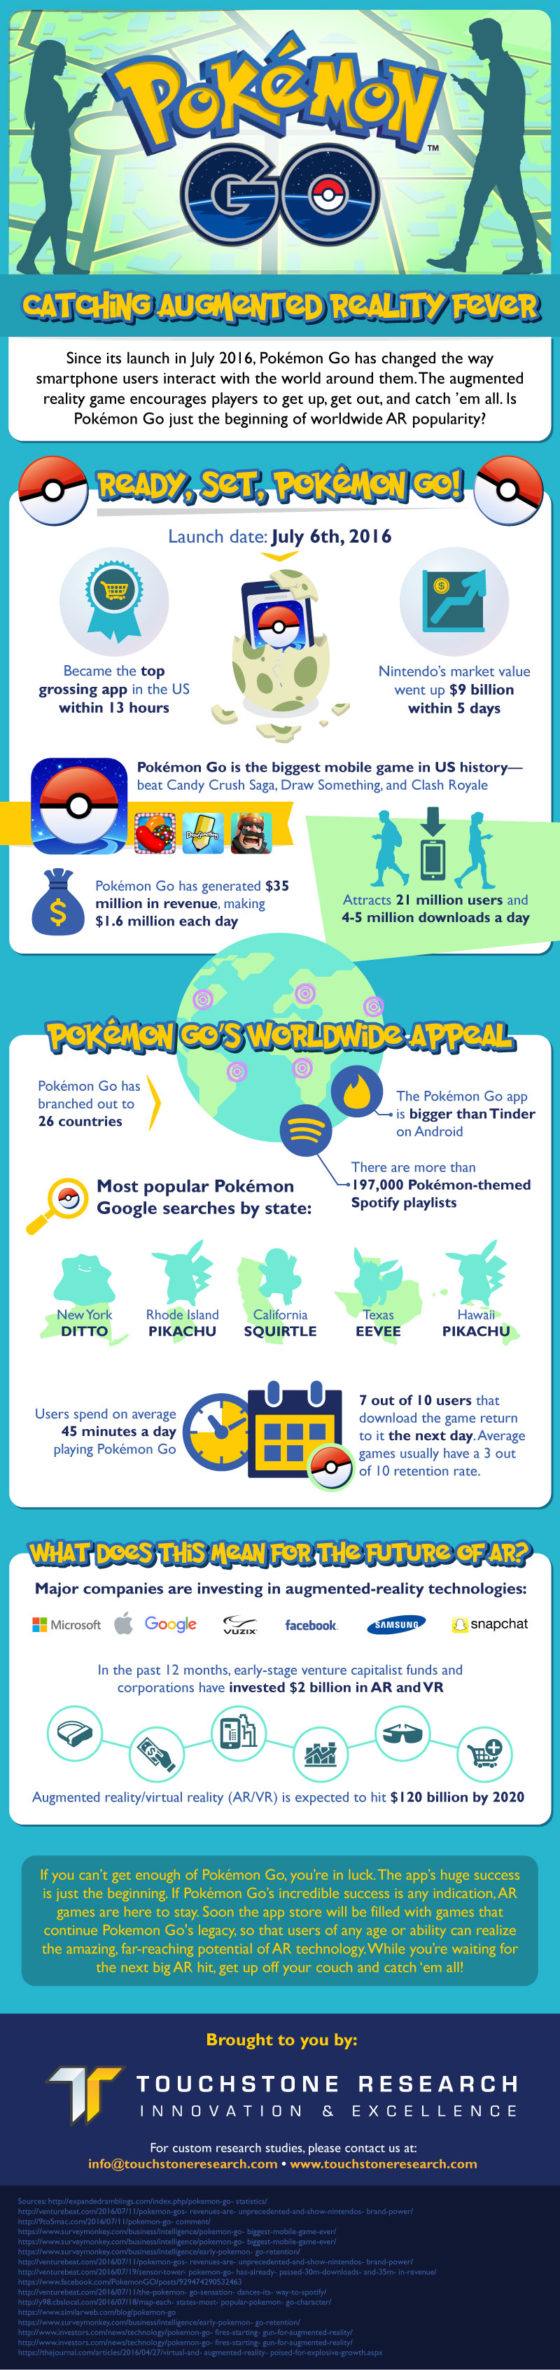 Pokemon Go statystyki infografika